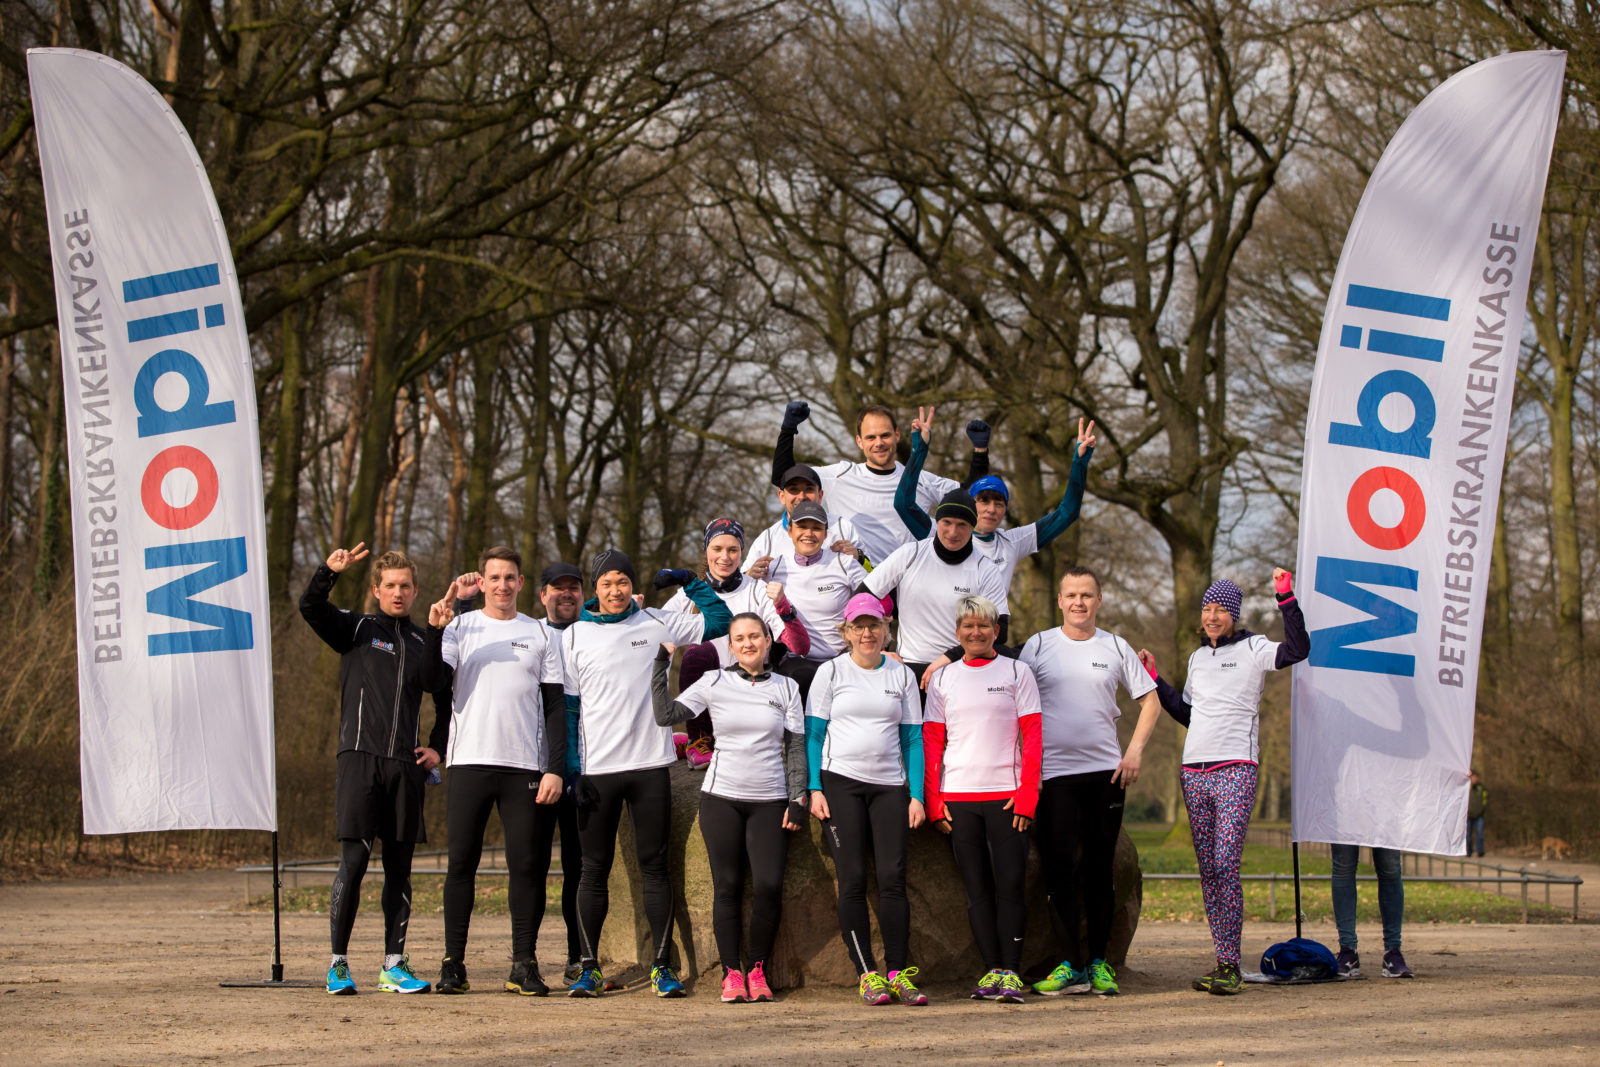 Marathon-Workshop am 4. März in Hamburg: jetzt mit der BKK Mobil Oil einen Platz gewinnen